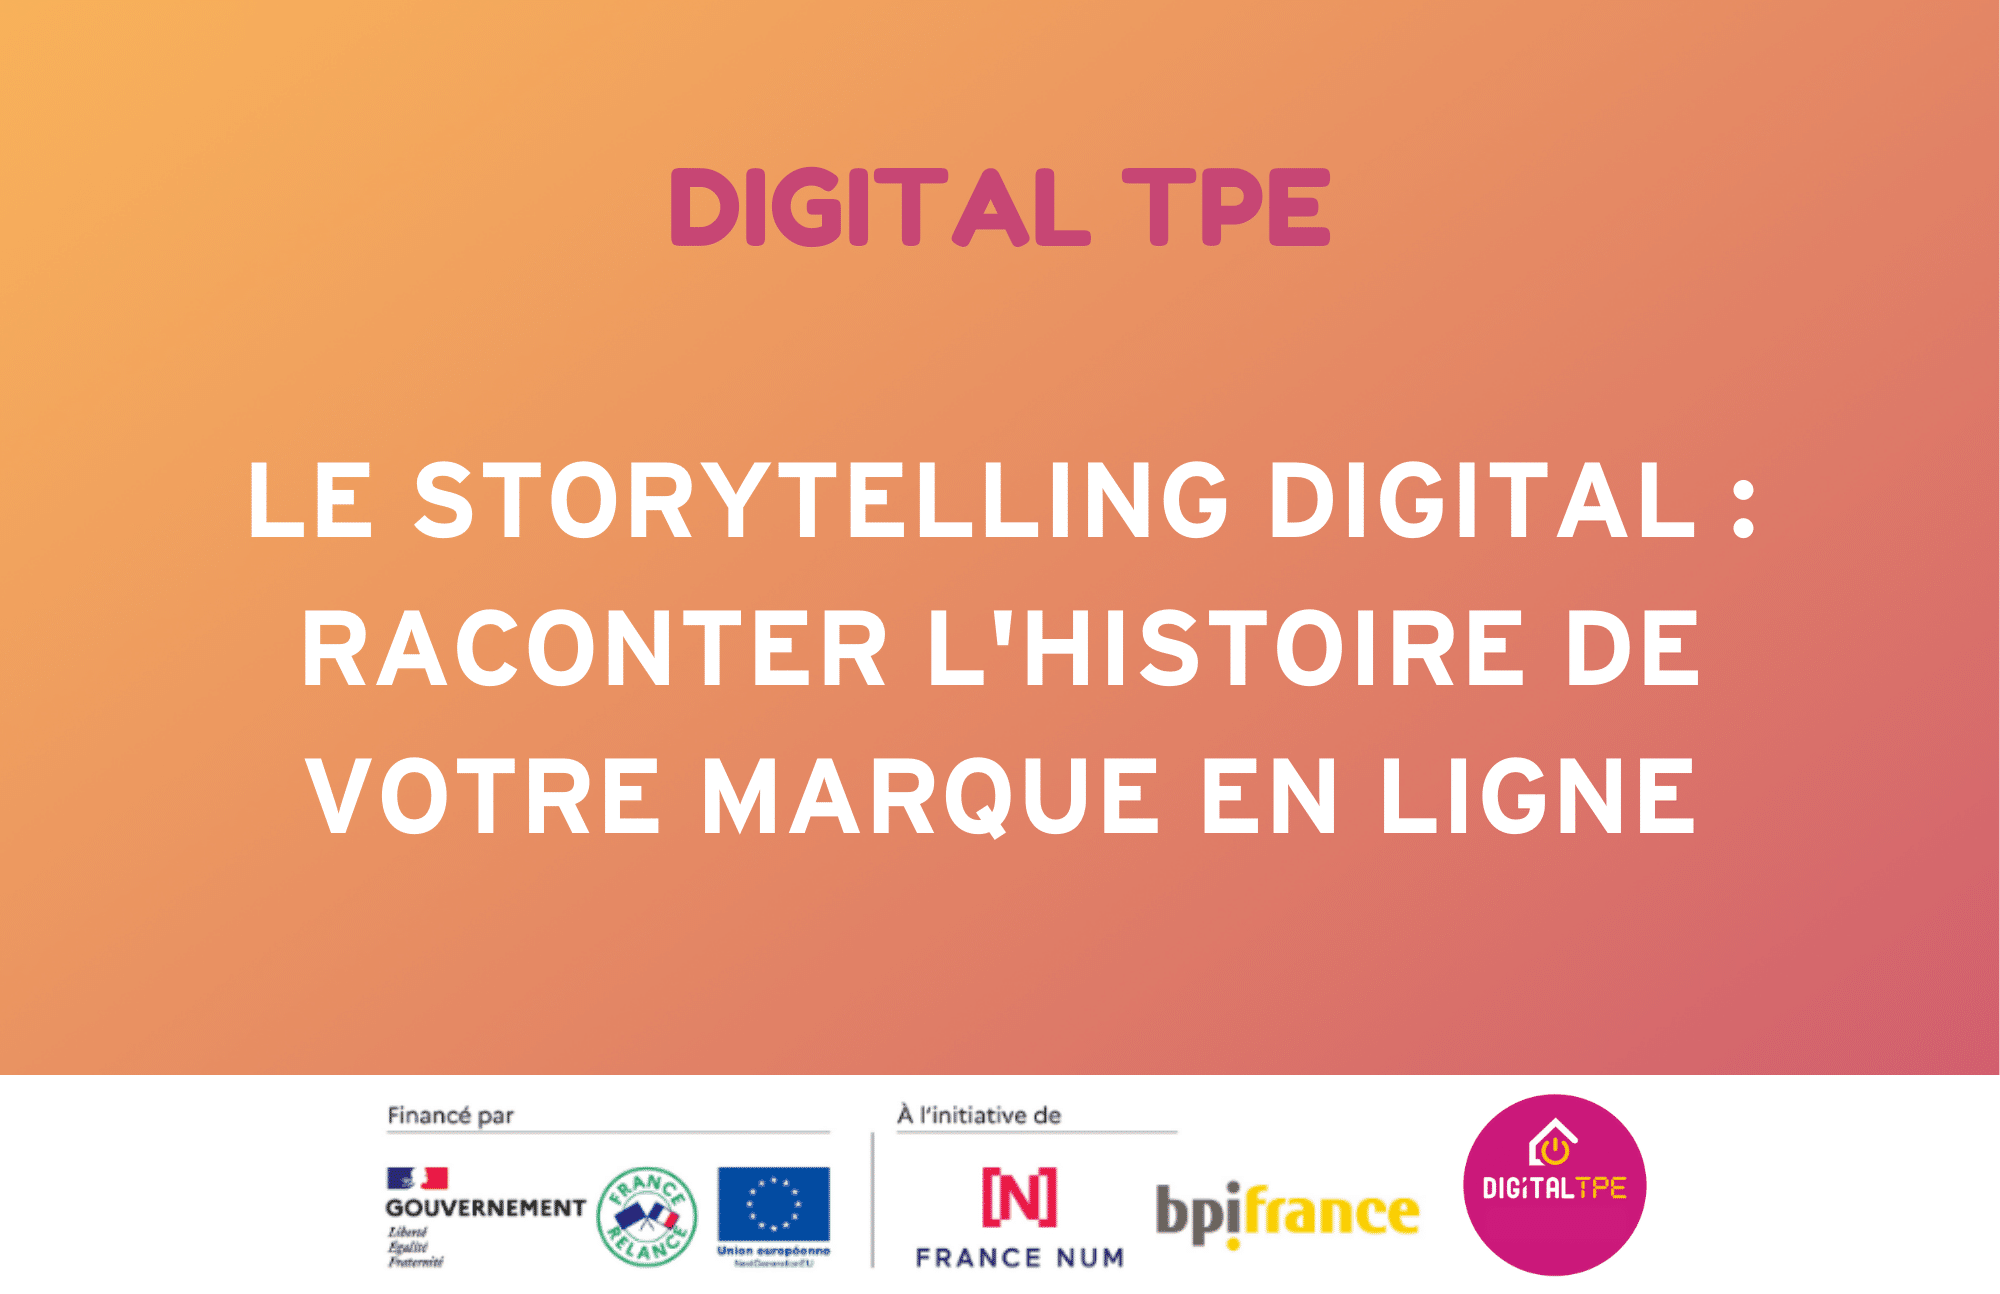 Image d'illustration de l'article de blog Digital TPE : Le storytelling digital : raconter l'histoire de votre marque en ligne